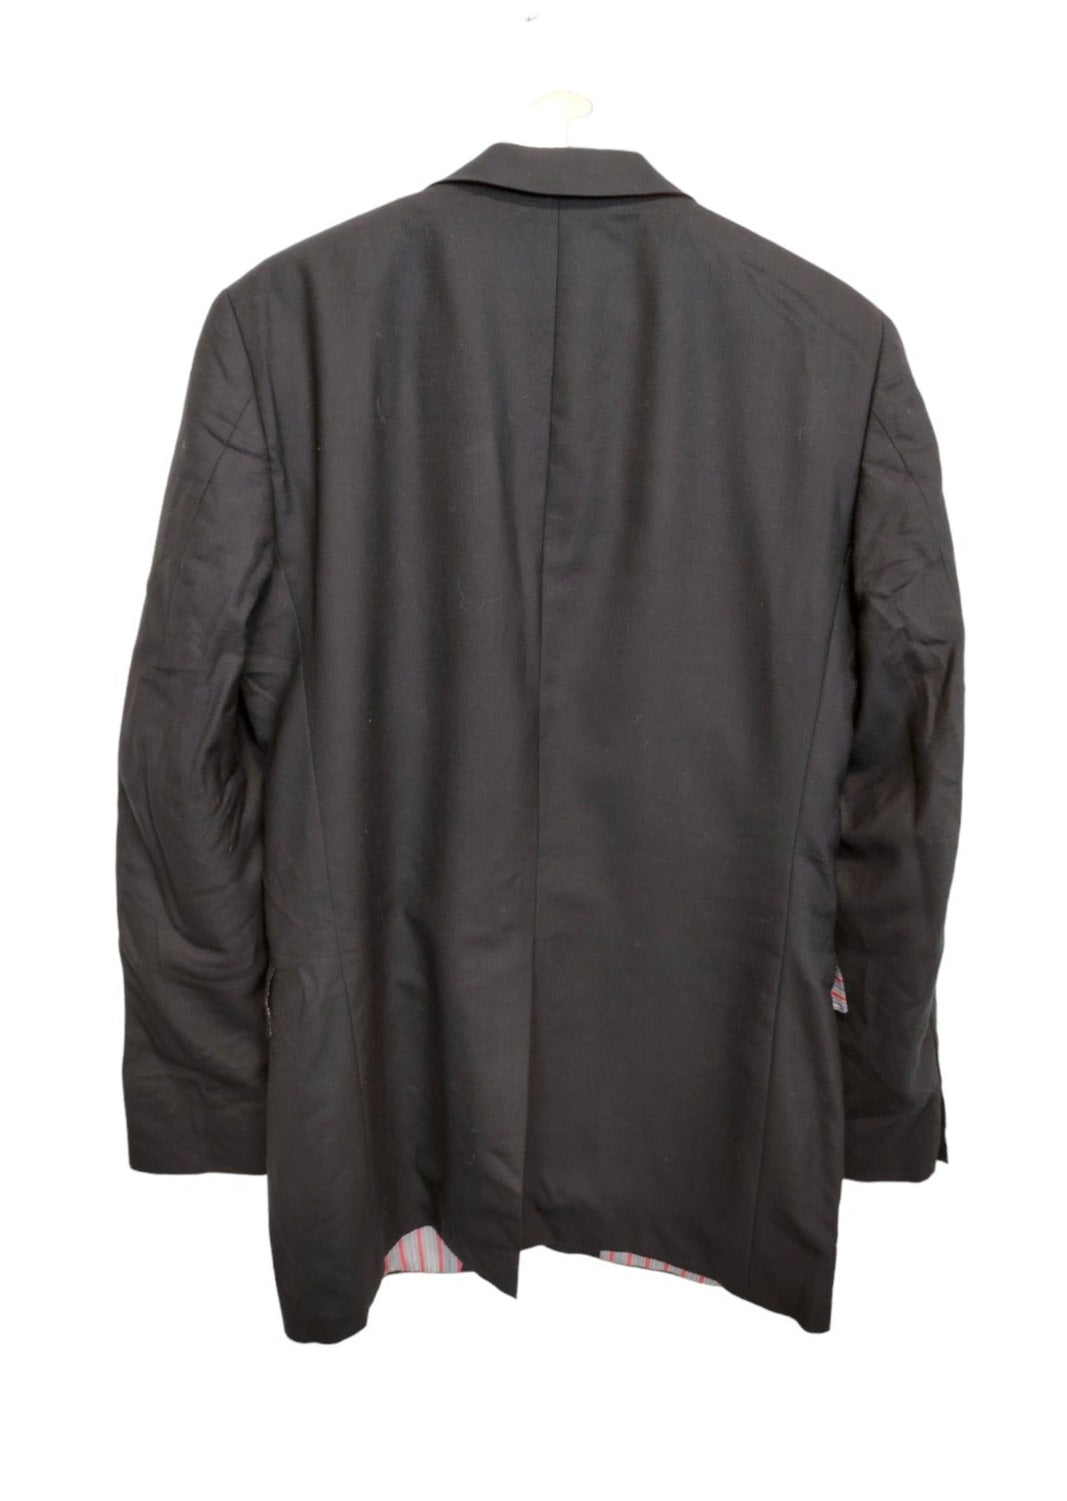 Μάλλινο Ανδρικό Σακάκι TOMMY HILFIGER σε Μαύρο Χρώμα (Large)